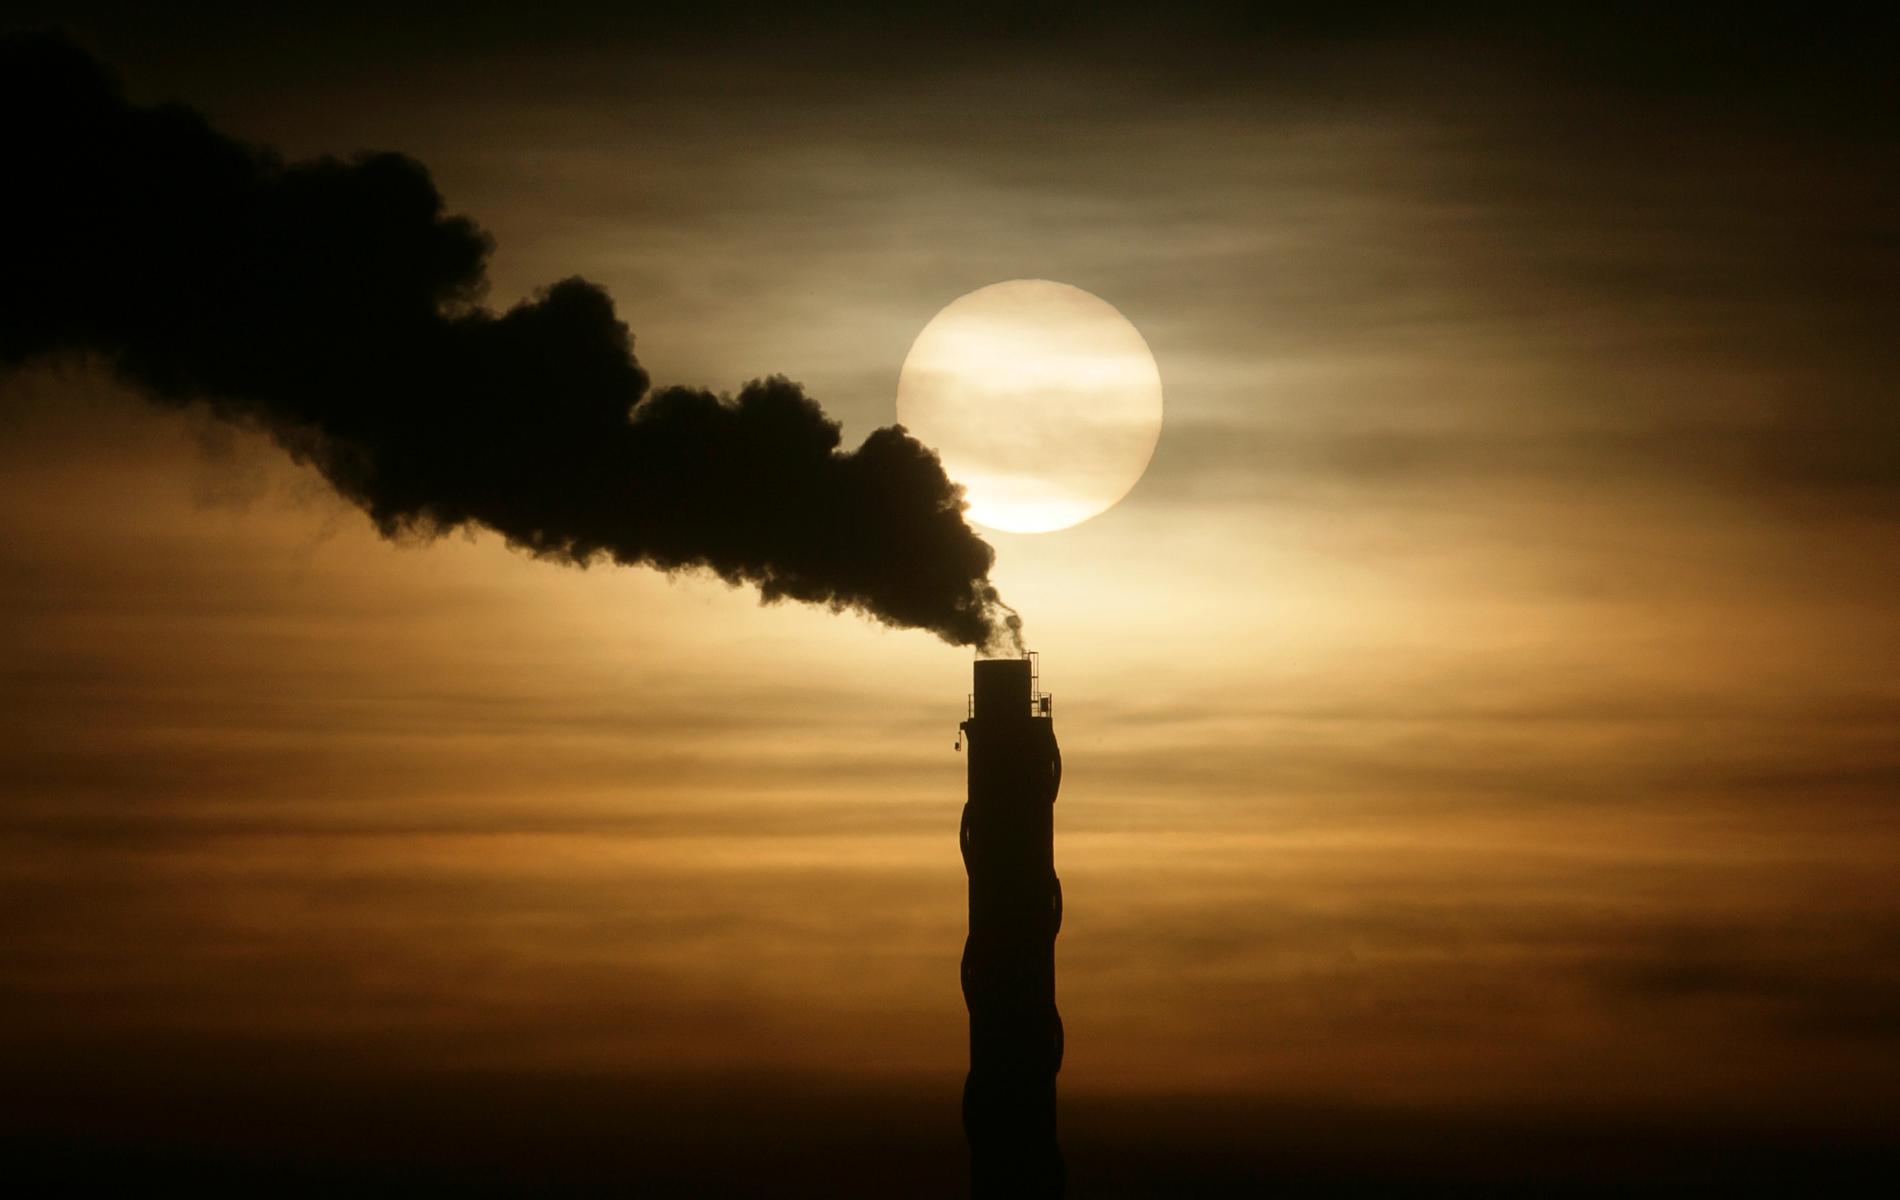 Sveriges utsläpp av växthusgaser kommer att öka de närmaste åren, enligt Klimatpolitiska rådet.